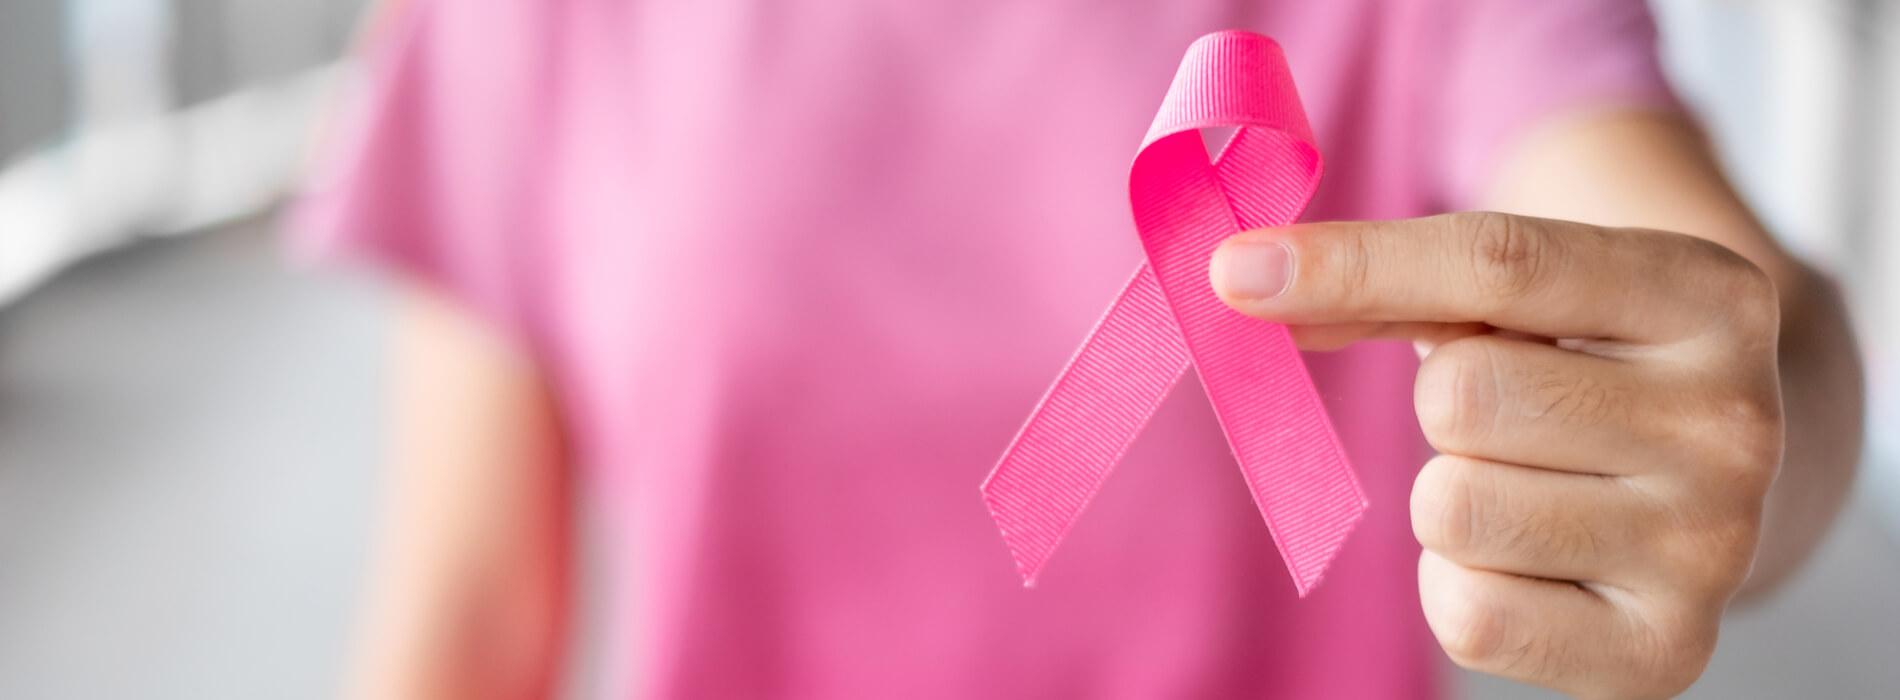 Badania genetyczne BRCA1 i BRCA2 - sposób na uniknięcie nowotworu